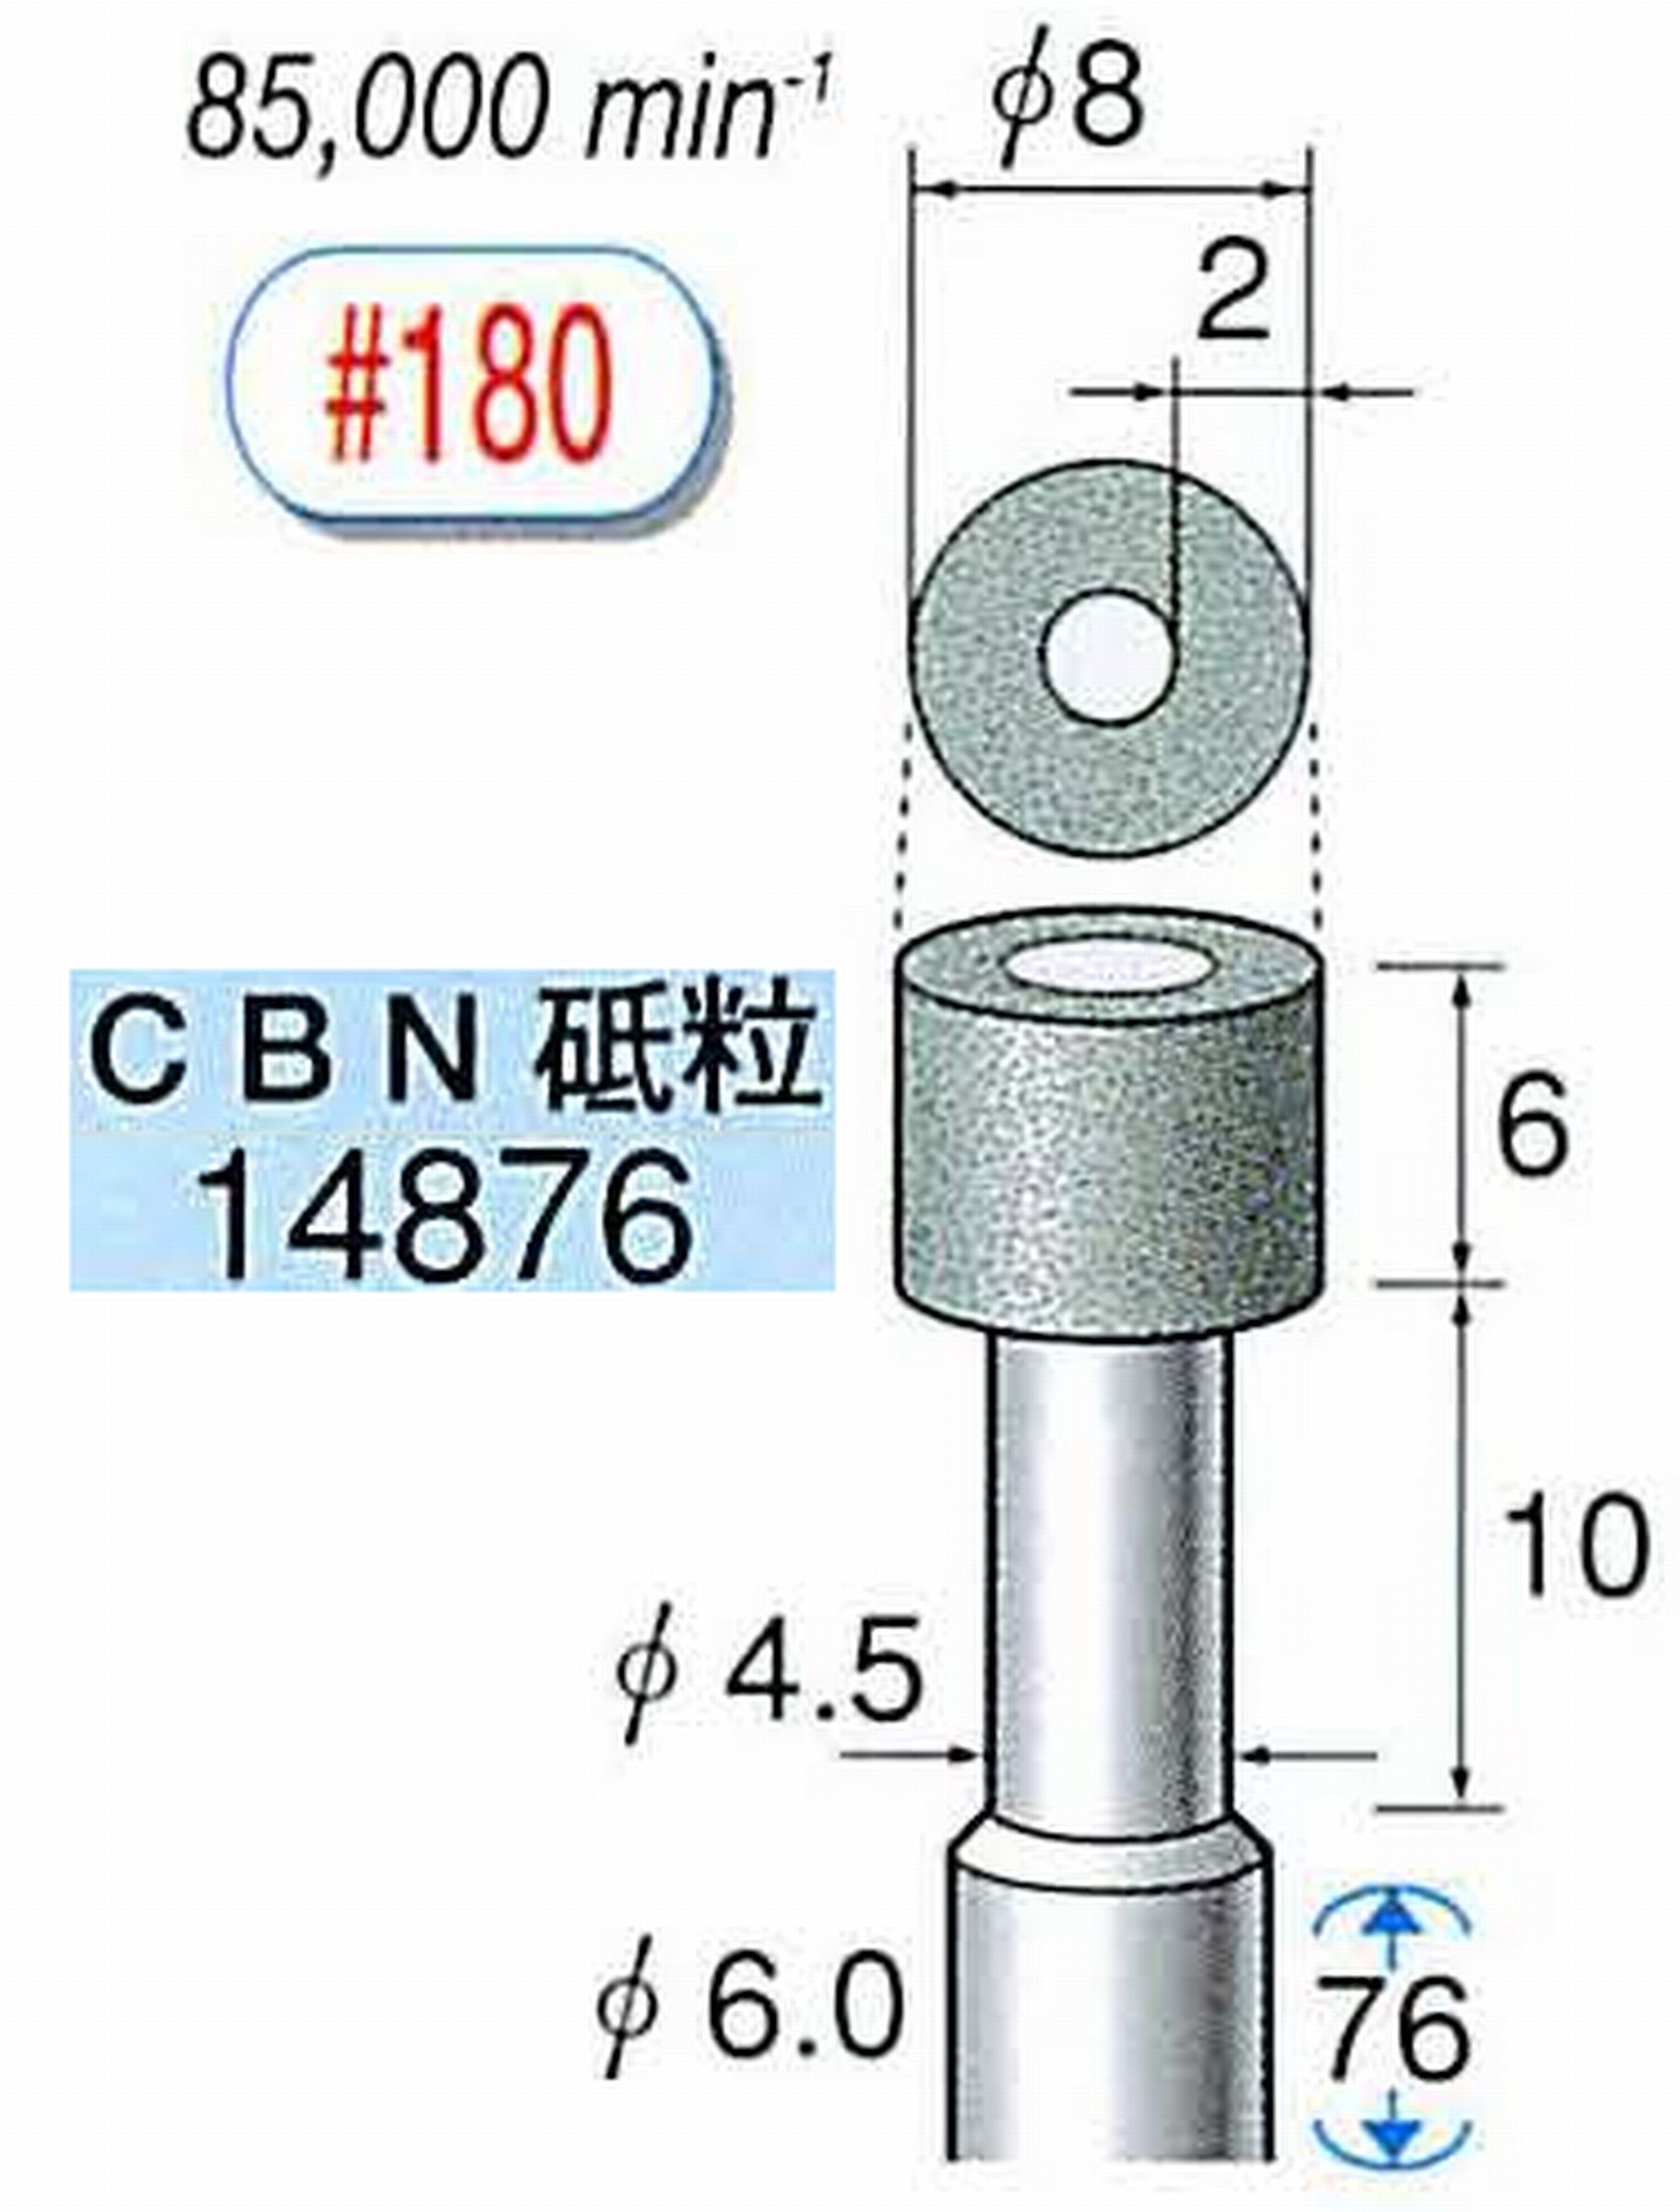 ナカニシ/NAKANISHI ビトリファイドダイヤモンド砥石 CBN砥粒 軸径(シャンク)φ6.0mm 14876